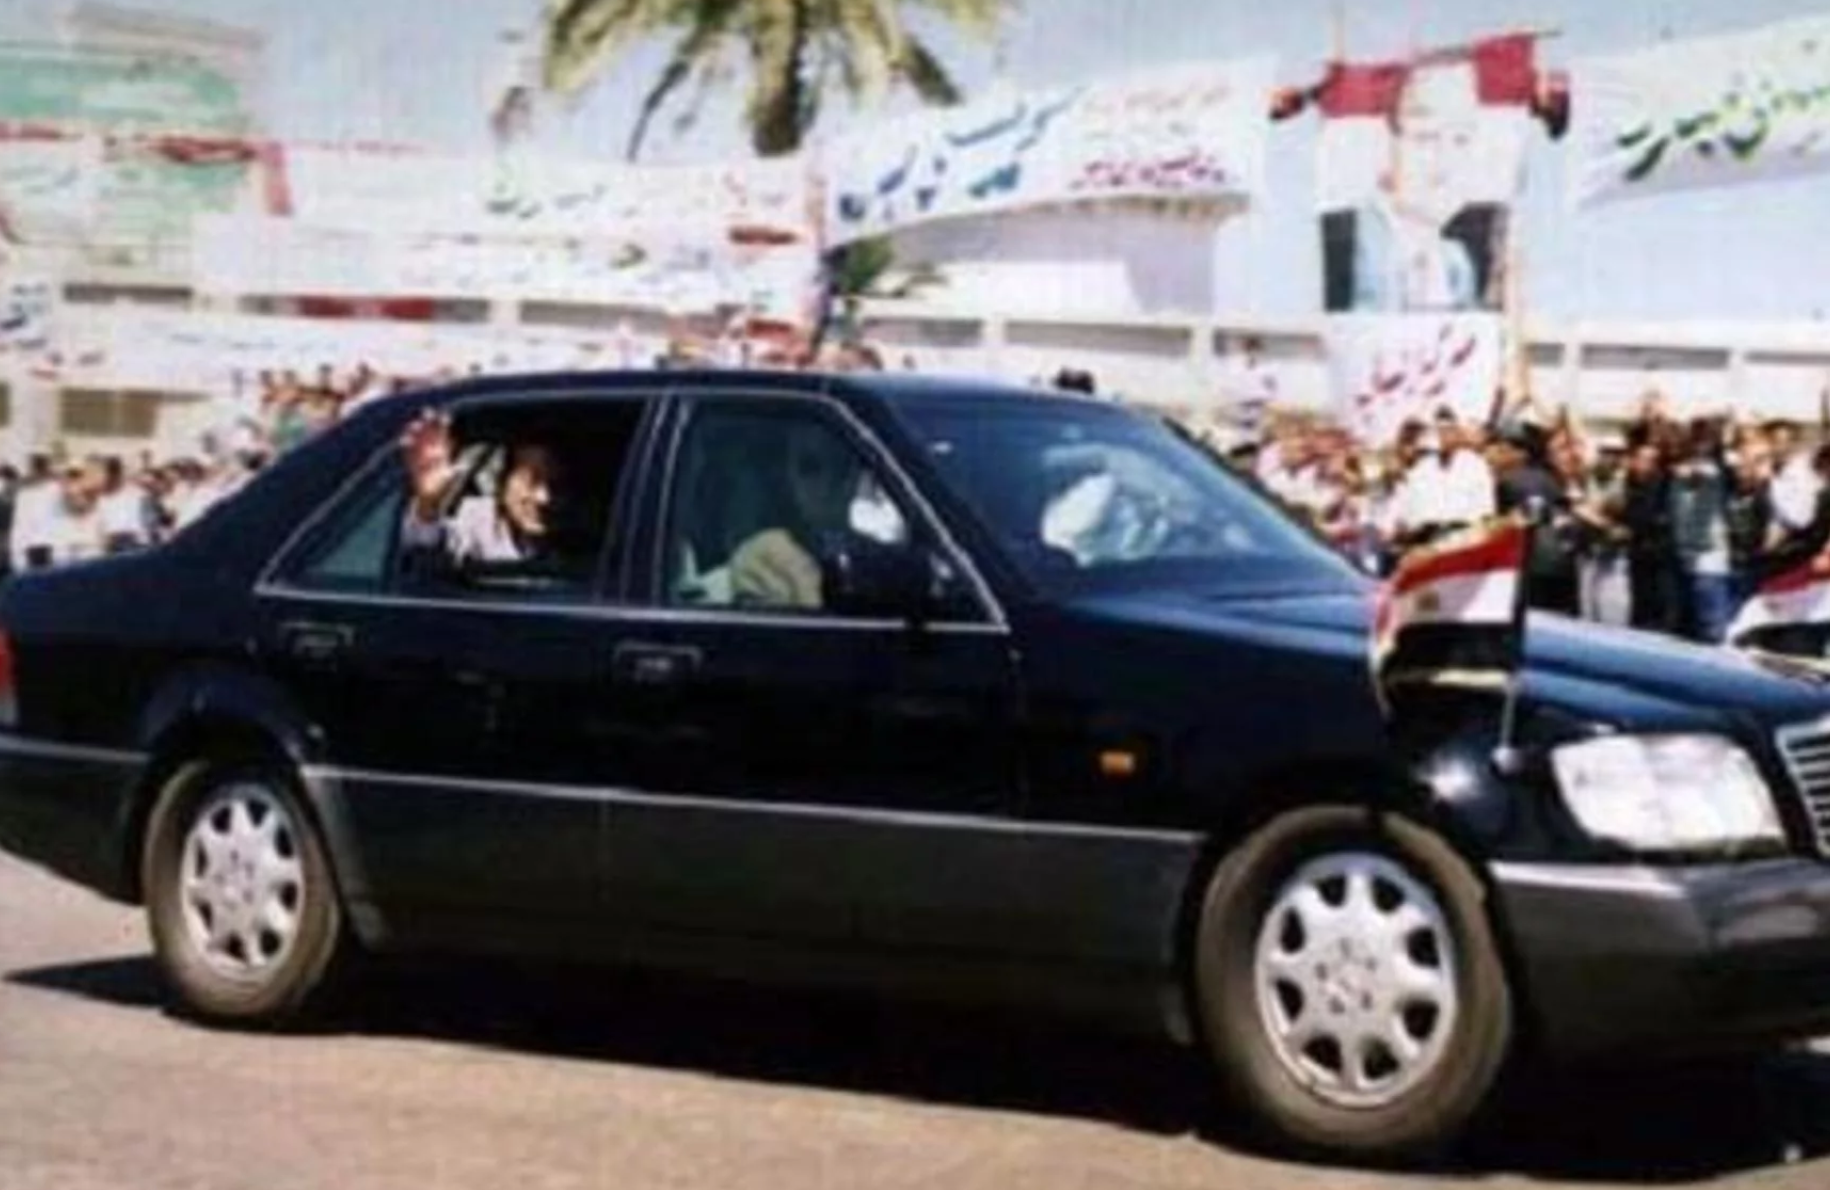 "بالصور" تعرف على سيارات الرئيس المصري الراحل محمد حسني مبارك 14